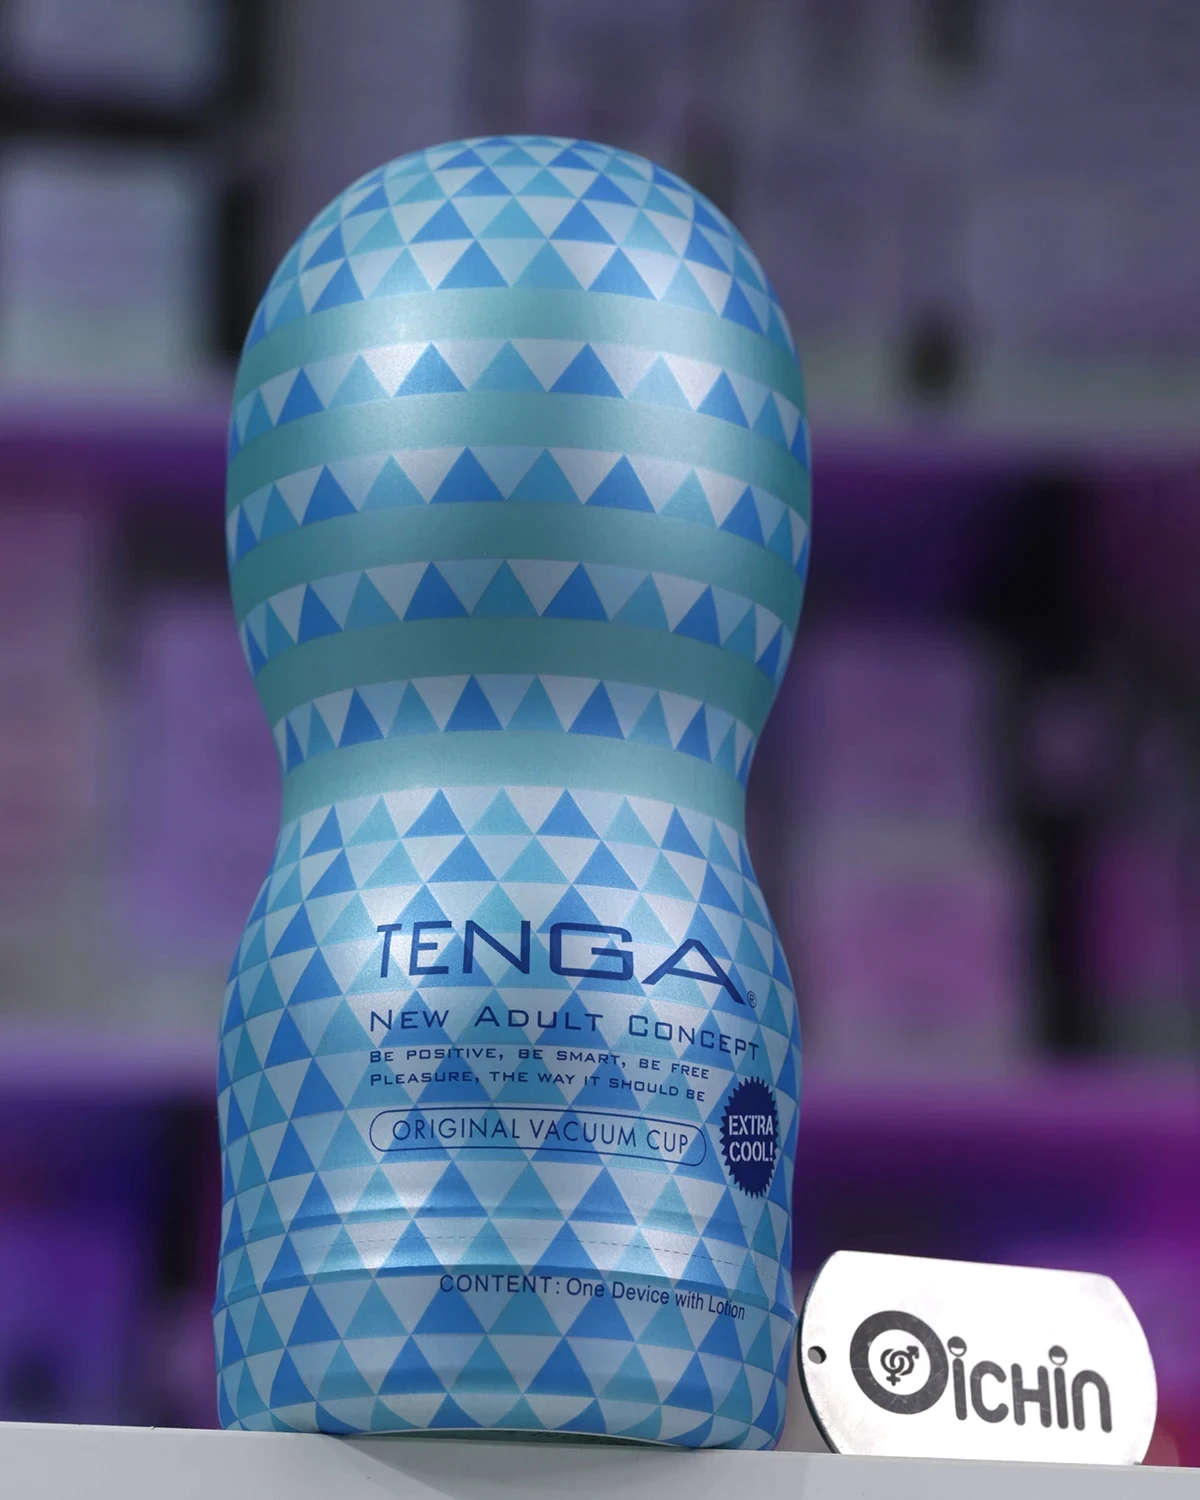 Tenga Original Vacuum Cup Extra Cool là đồ chơi tình dục mang lại cảm giác mạnh mẽ